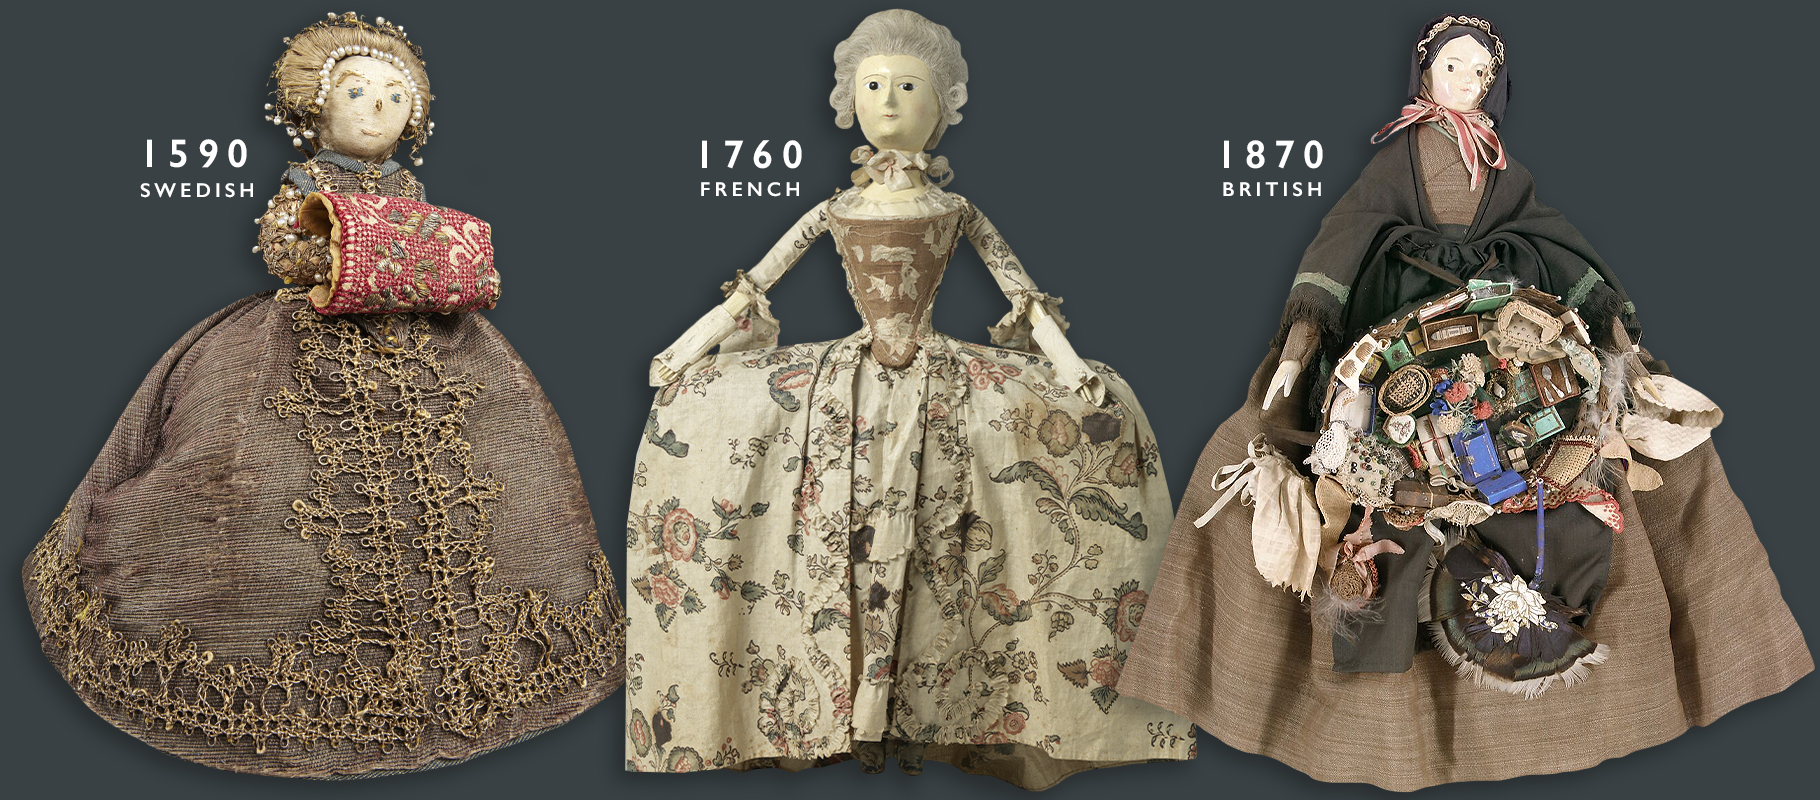 Doll history